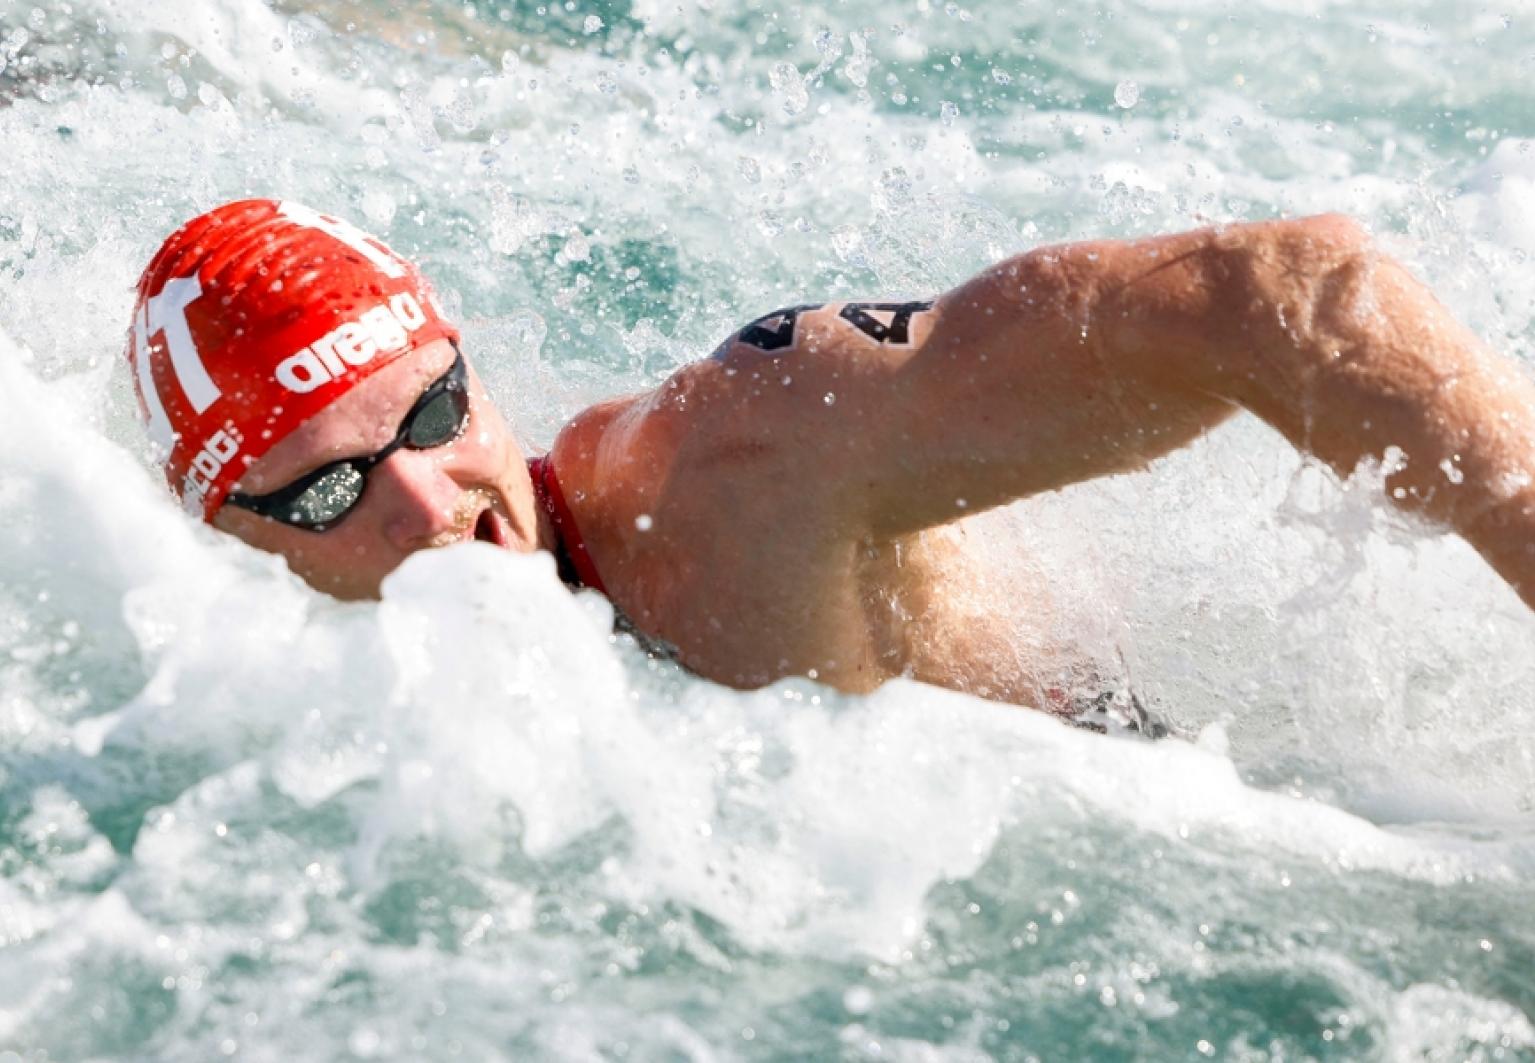 SV-Halle-Freiwasserschwimmer Jan Hercog hat sich für die Olympischen Spiele 2024 qualifiziert. Foto GEPA pictures, Philipp Brem 